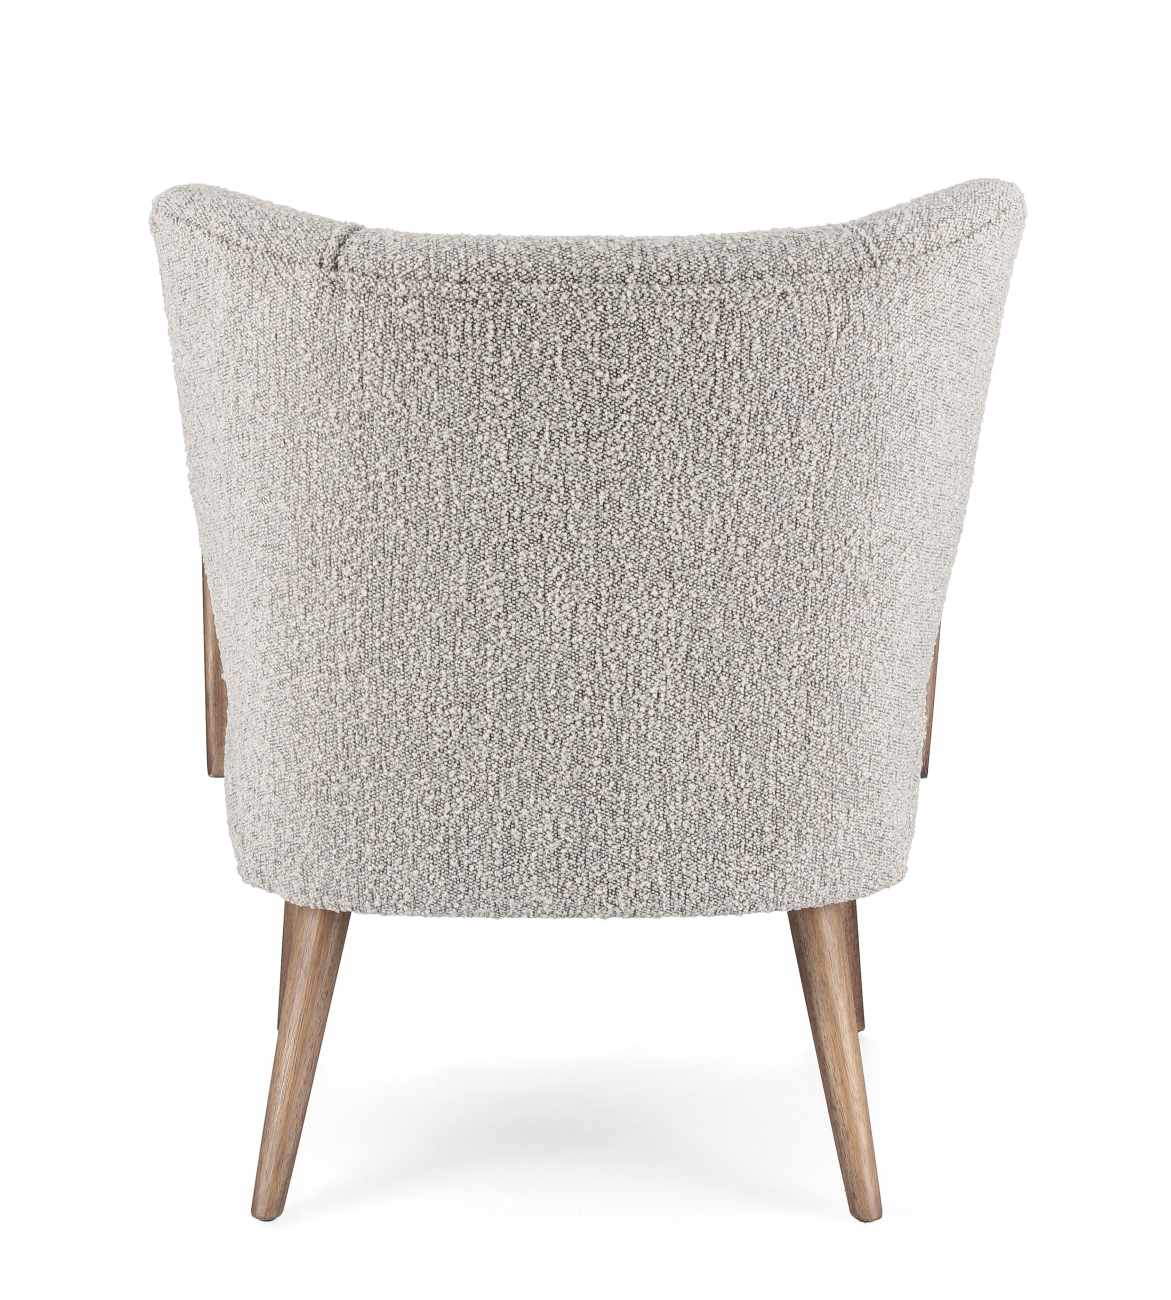 Der Sessel Moritz überzeugt mit seinem modernen Stil. Gefertigt wurde er aus einem Stoff-Bezug, welcher einen hellgrauen Farbton besitzt. Das Gestell ist aus Kautschukholz und hat eine braune Farbe. Der Sessel verfügt über eine Armlehne.